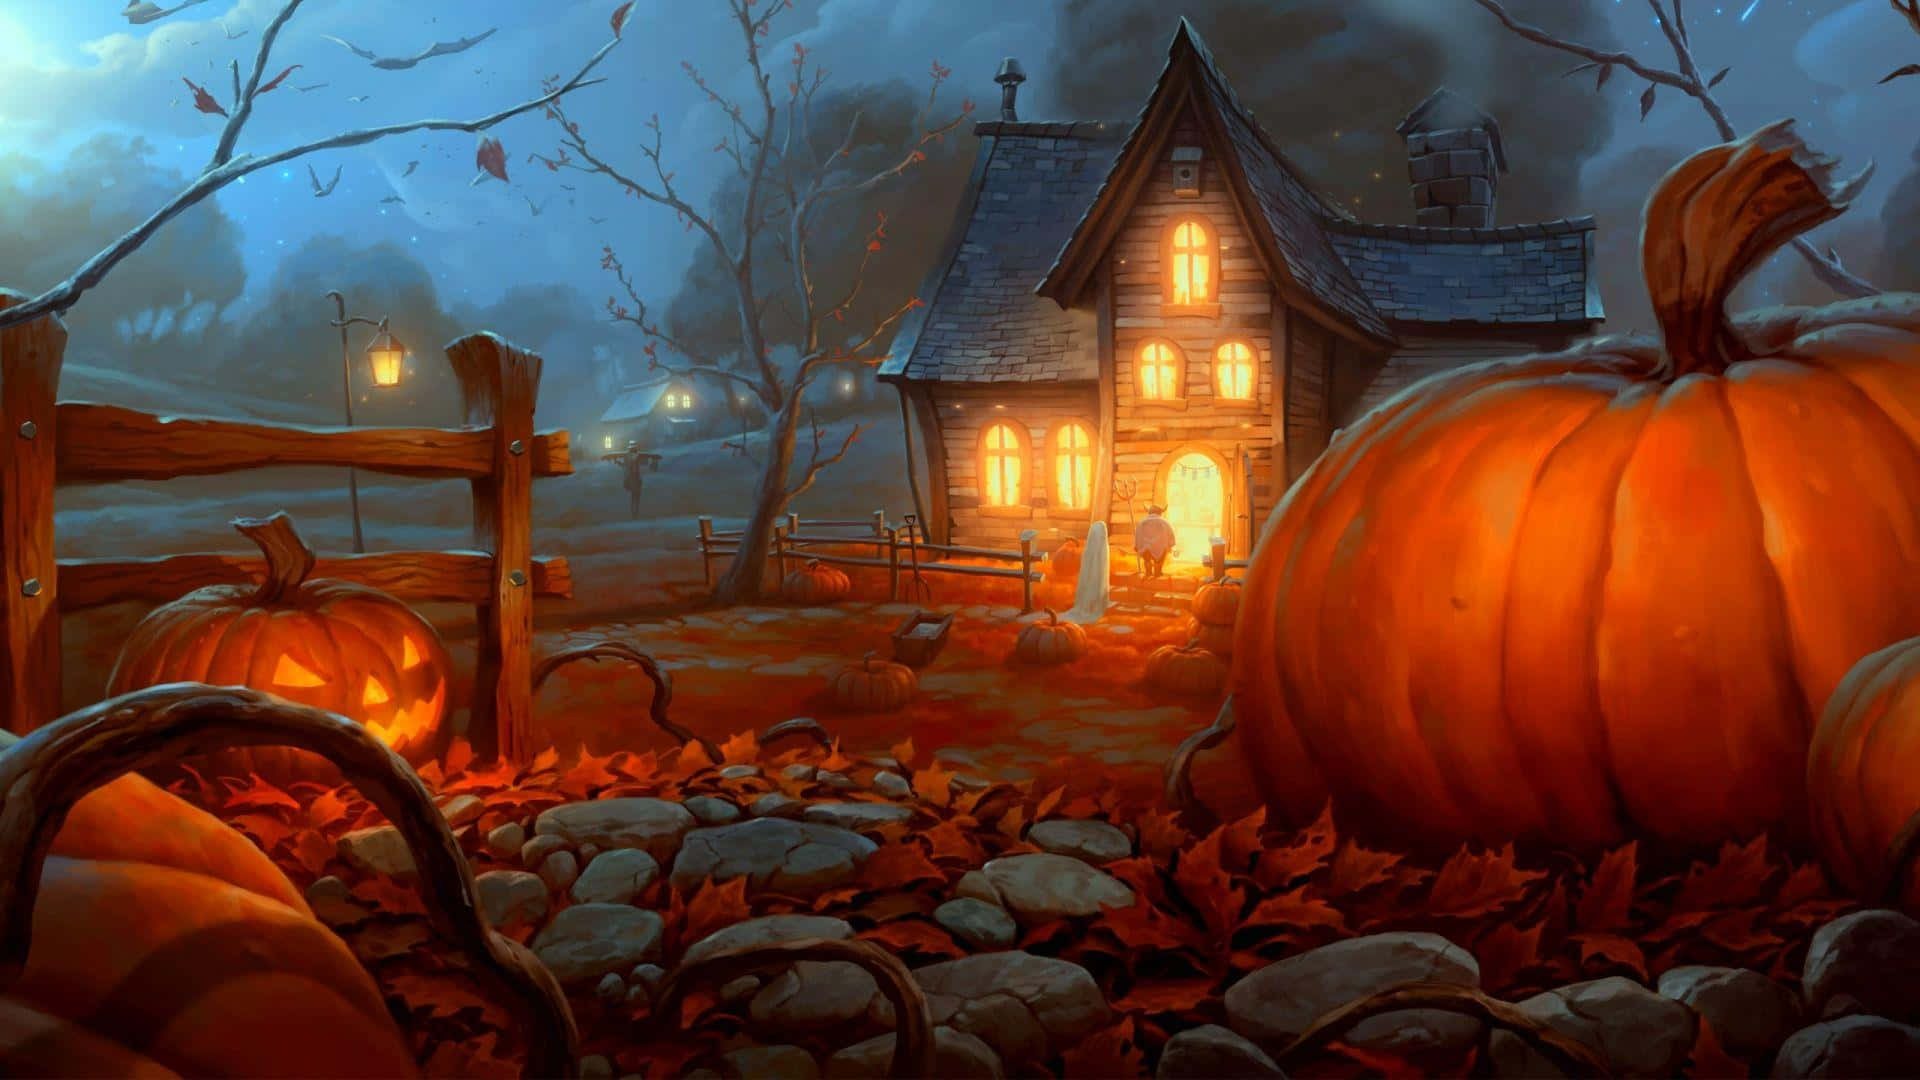 A Spooky 3D Halloween Night Wallpaper